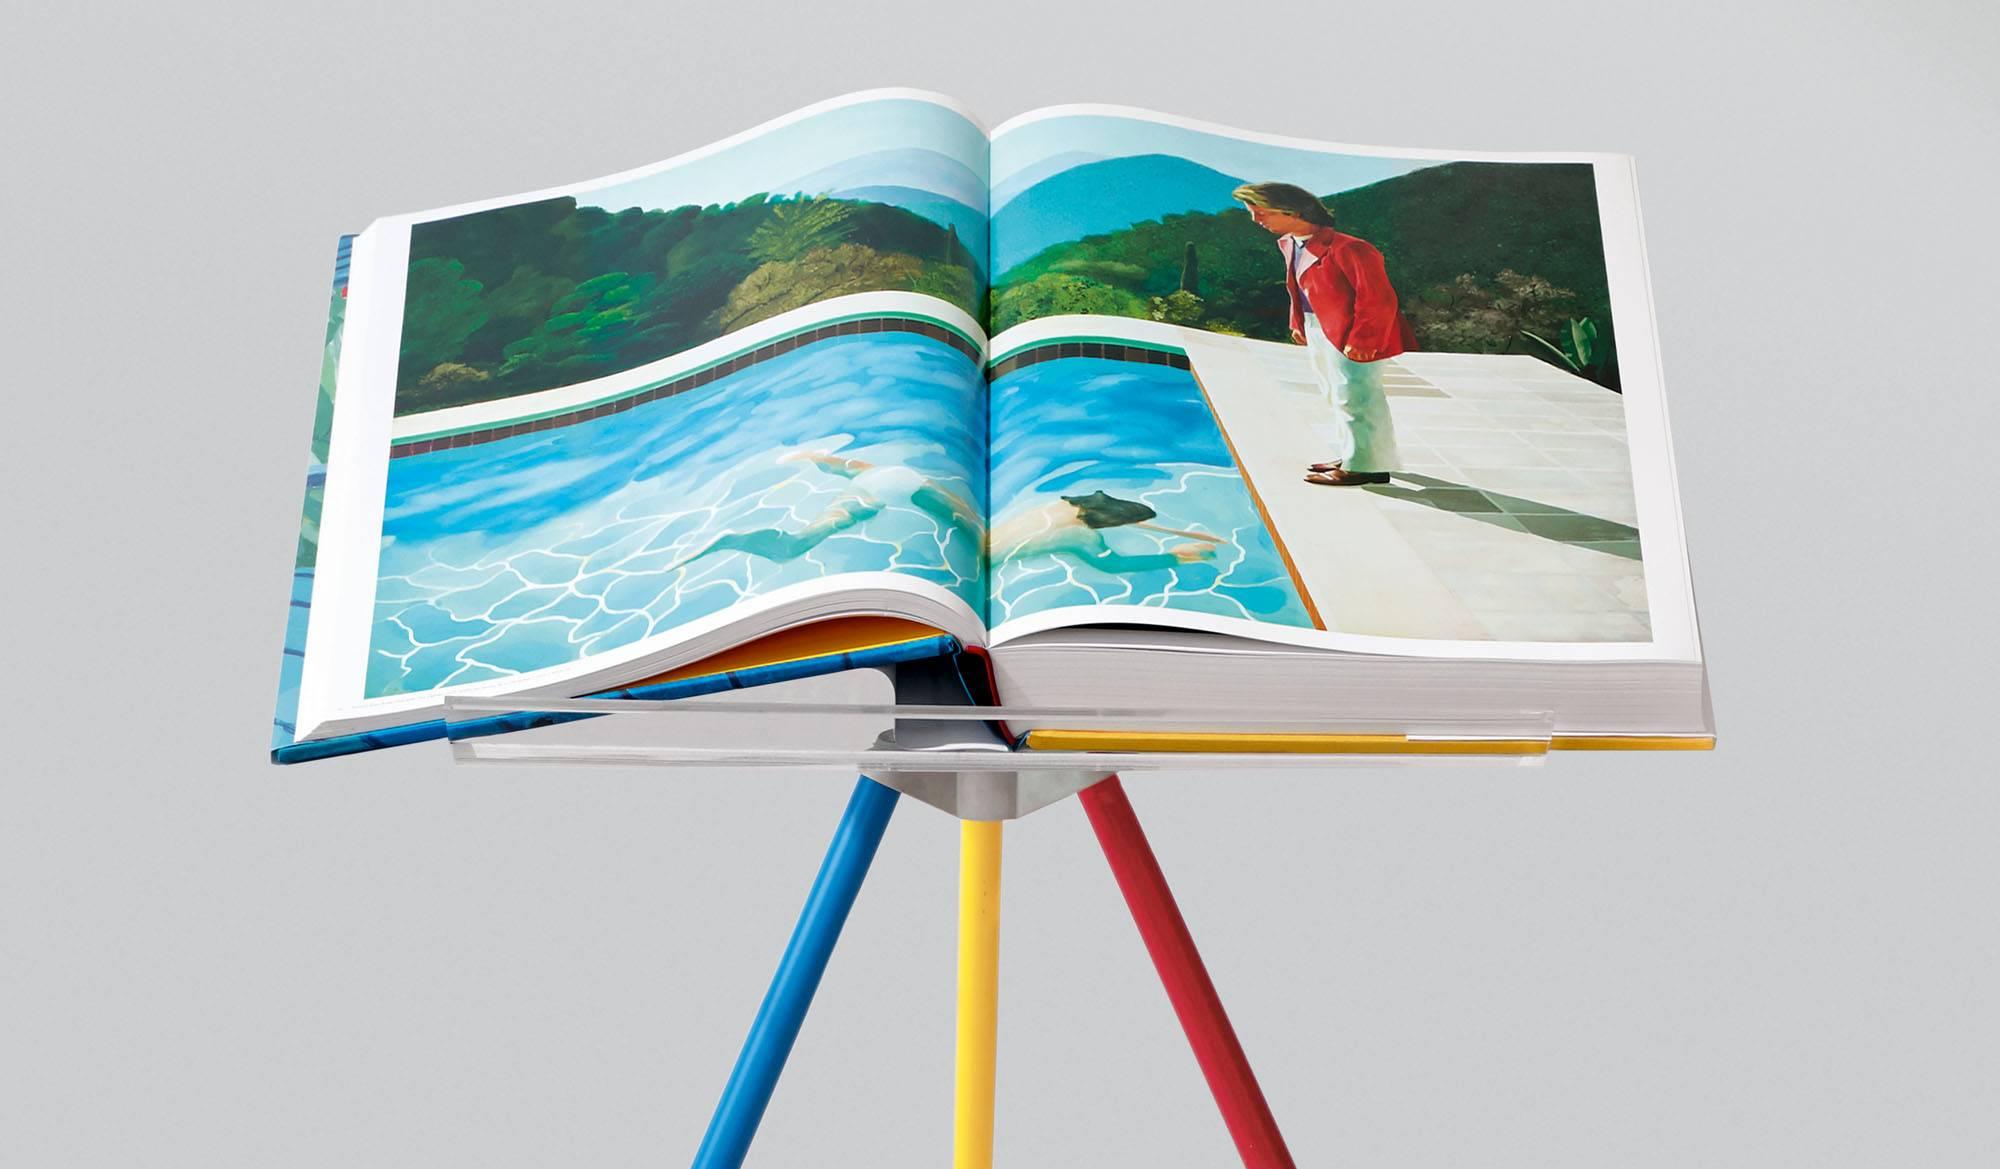 Couverture rigide, 50 x 70 cm (19.6 x 27.5 in.), 498 pages, 13 Foldes, avec un support de livre ajustable conçu par Marc Newson, plus un livre chronologique illustré de 680 pages.

A Bigger Book, la monographie de David Hockney réalisée par